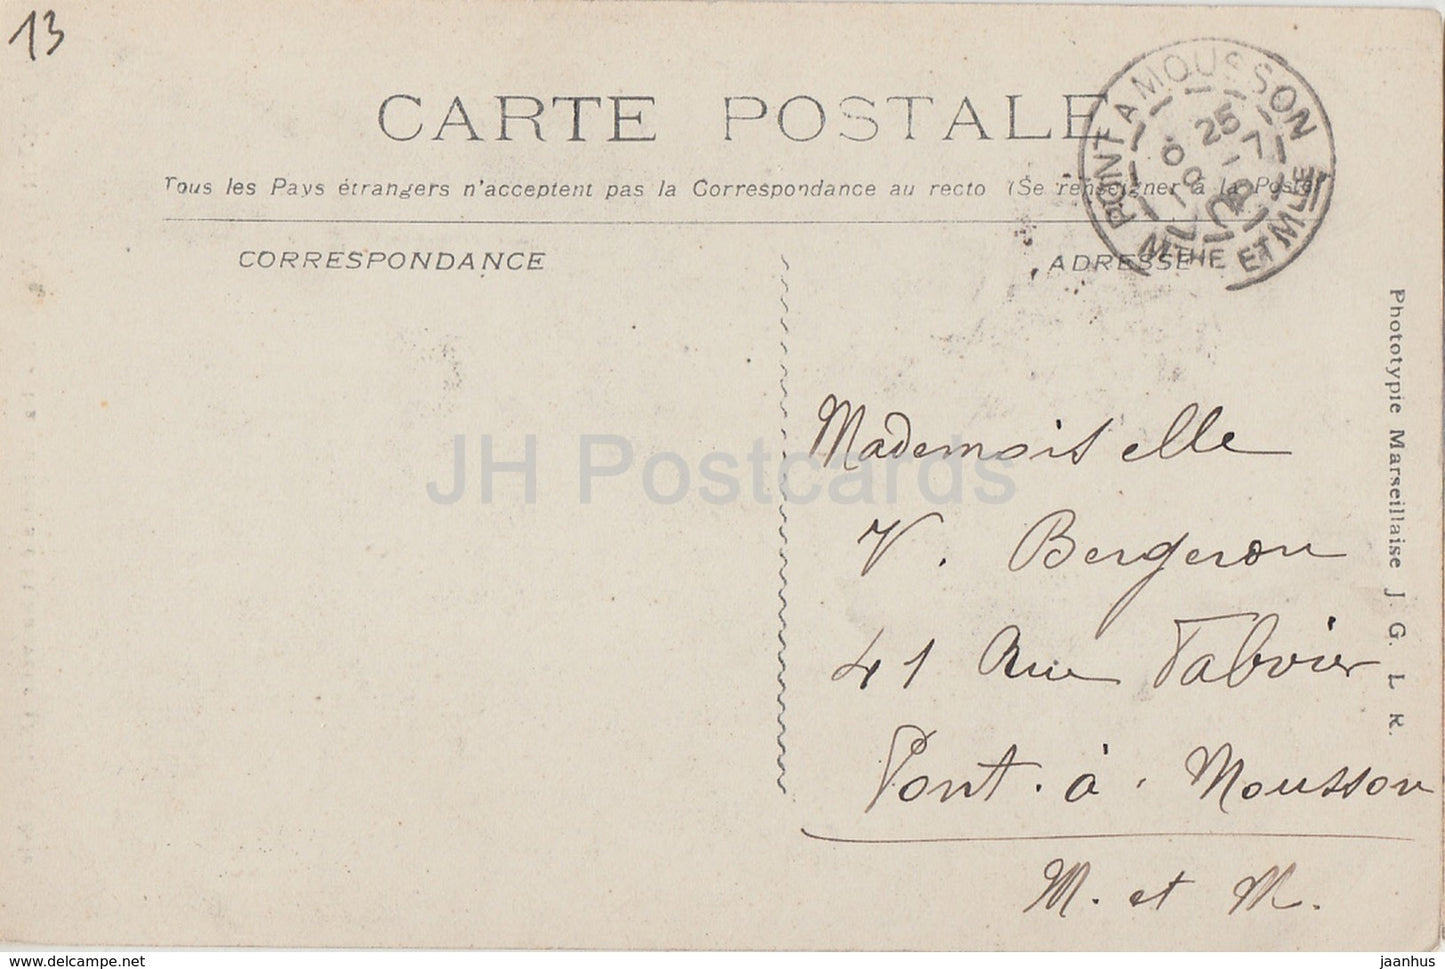 Aix En Provence - La Cathedrale St Sauveur - Kathedrale - 859 - alte Postkarte - 1908 - Frankreich - gebraucht